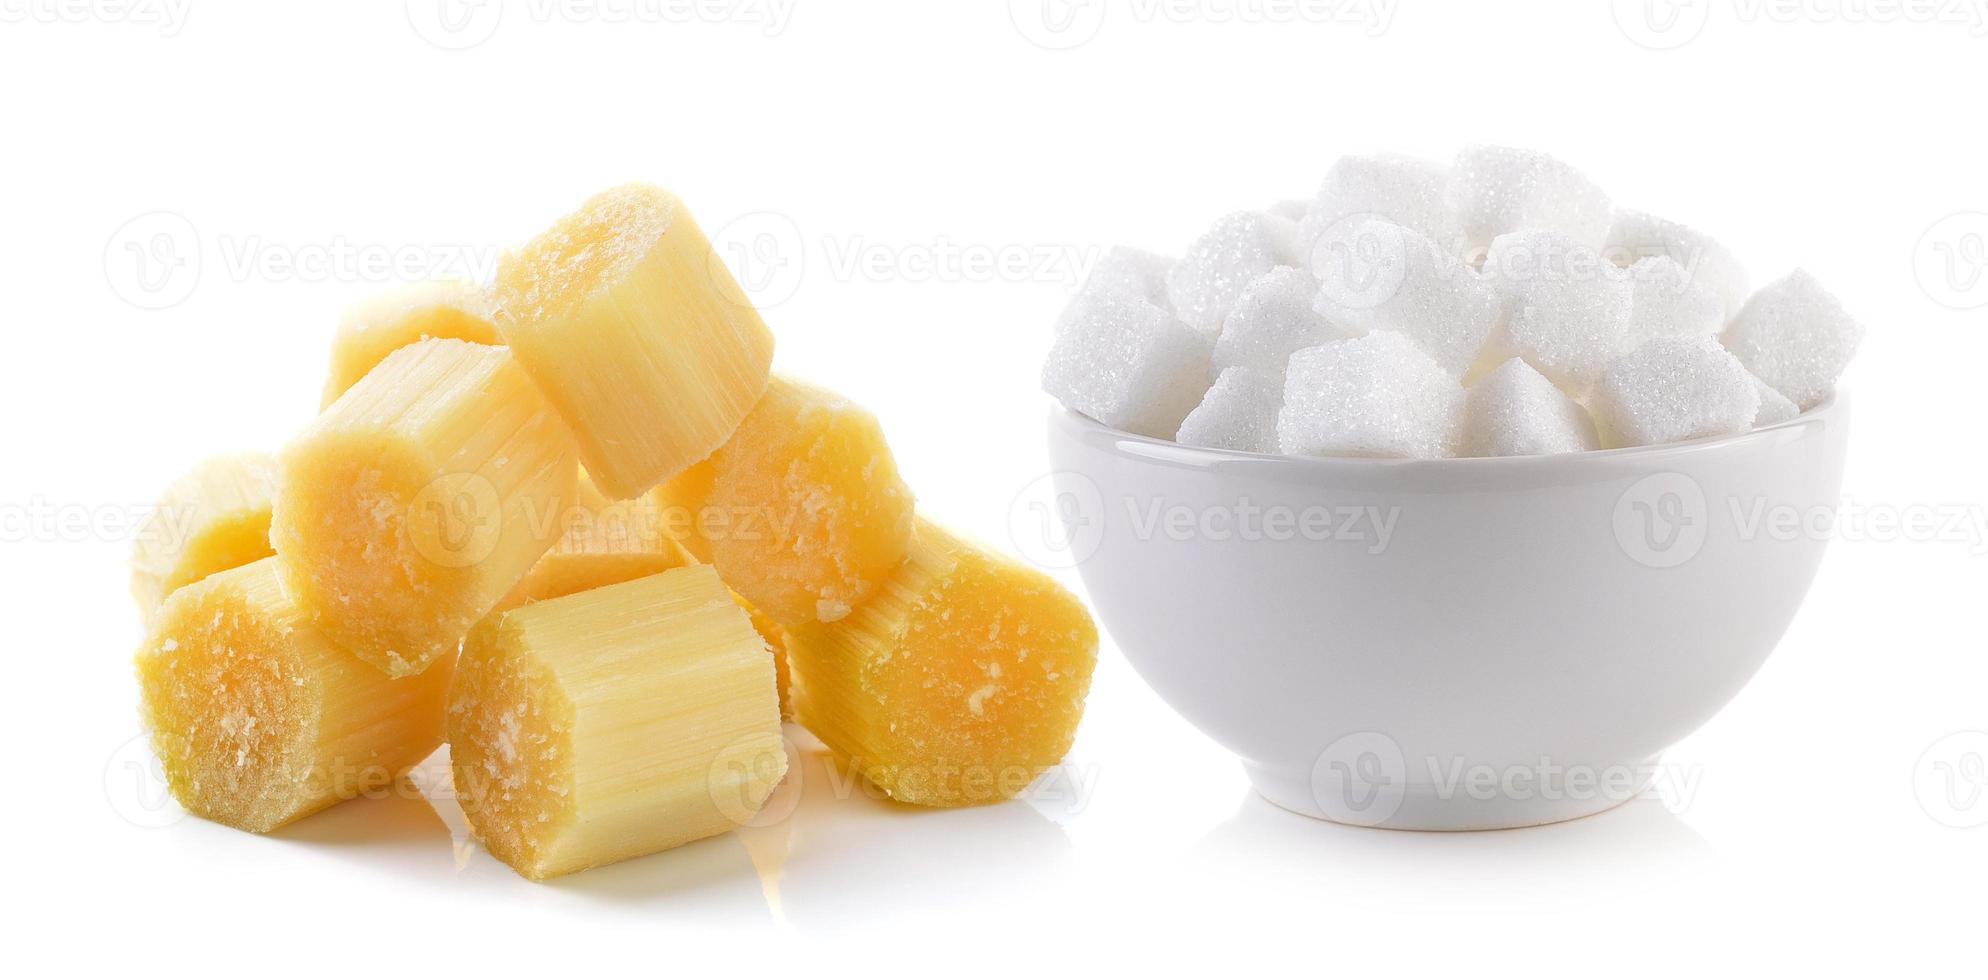 suikerklontje in de kom en suikerriet op witte achtergrond foto